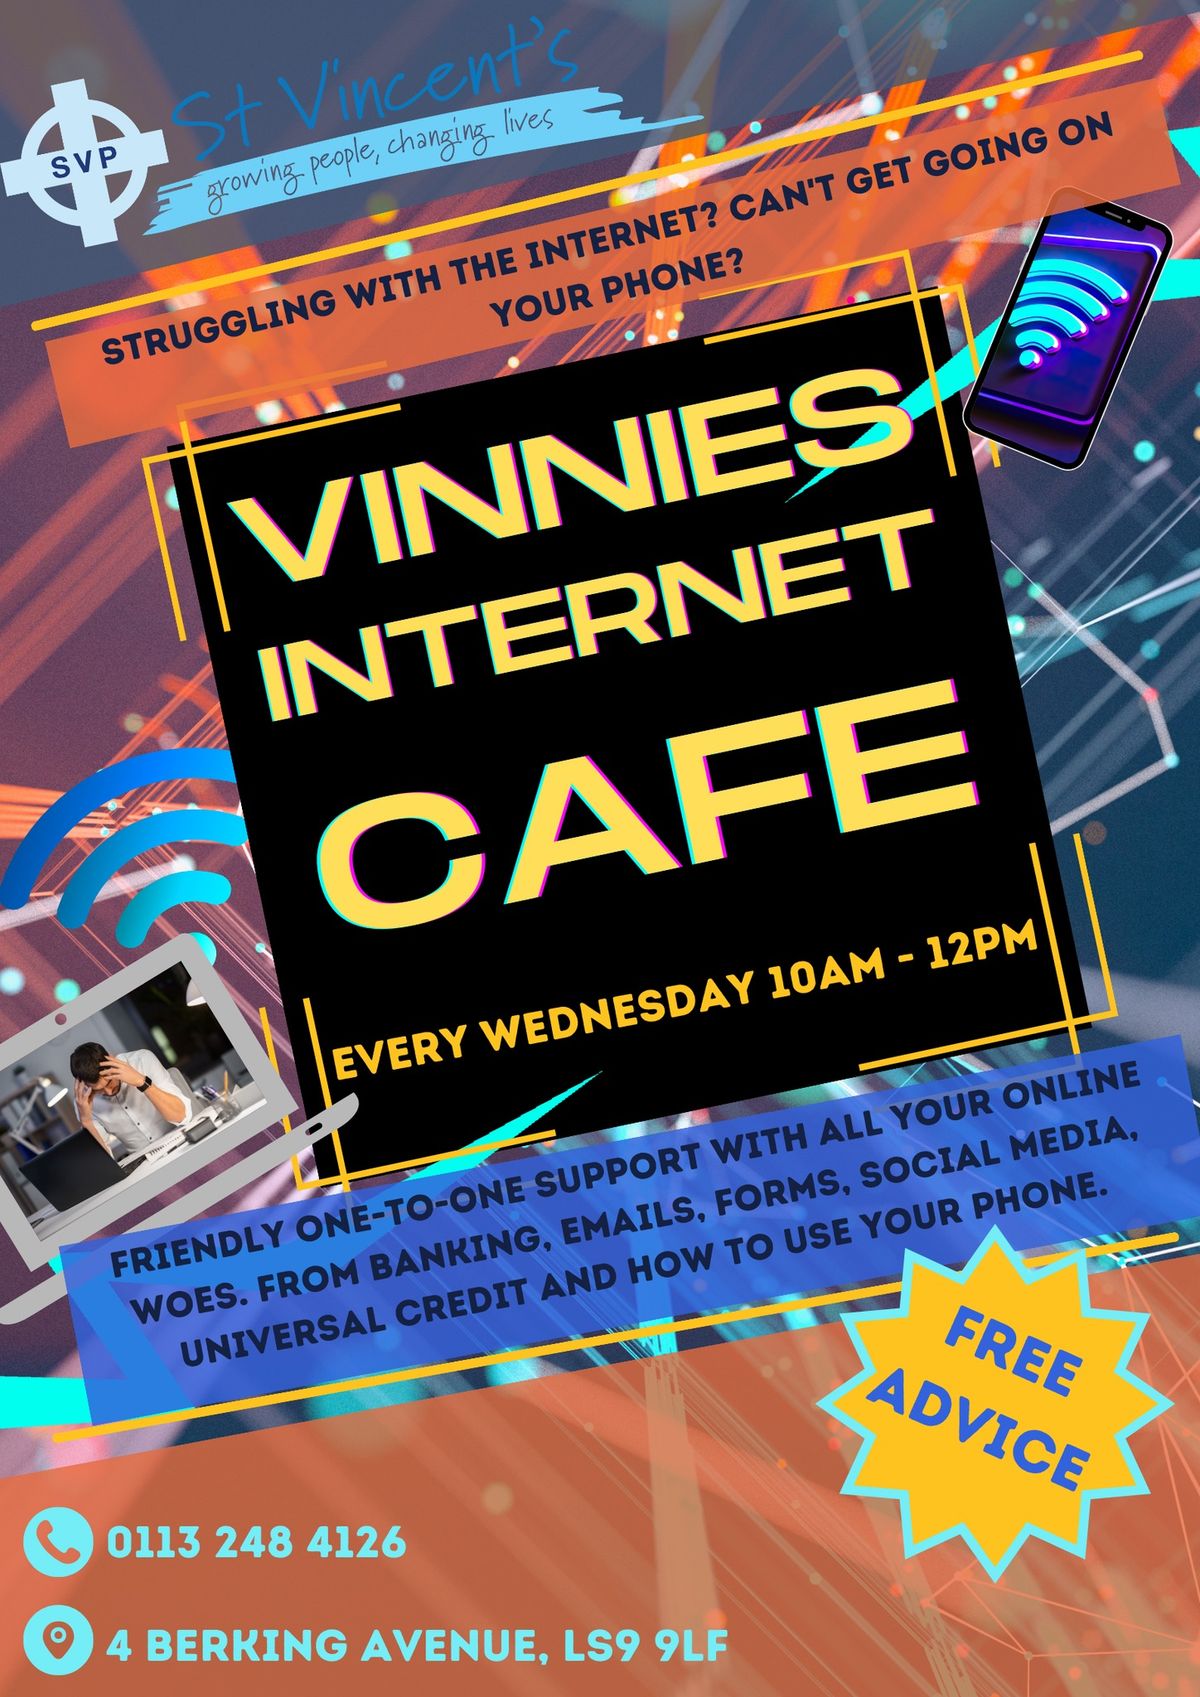 Vinnies Internet Caf\u00e9 